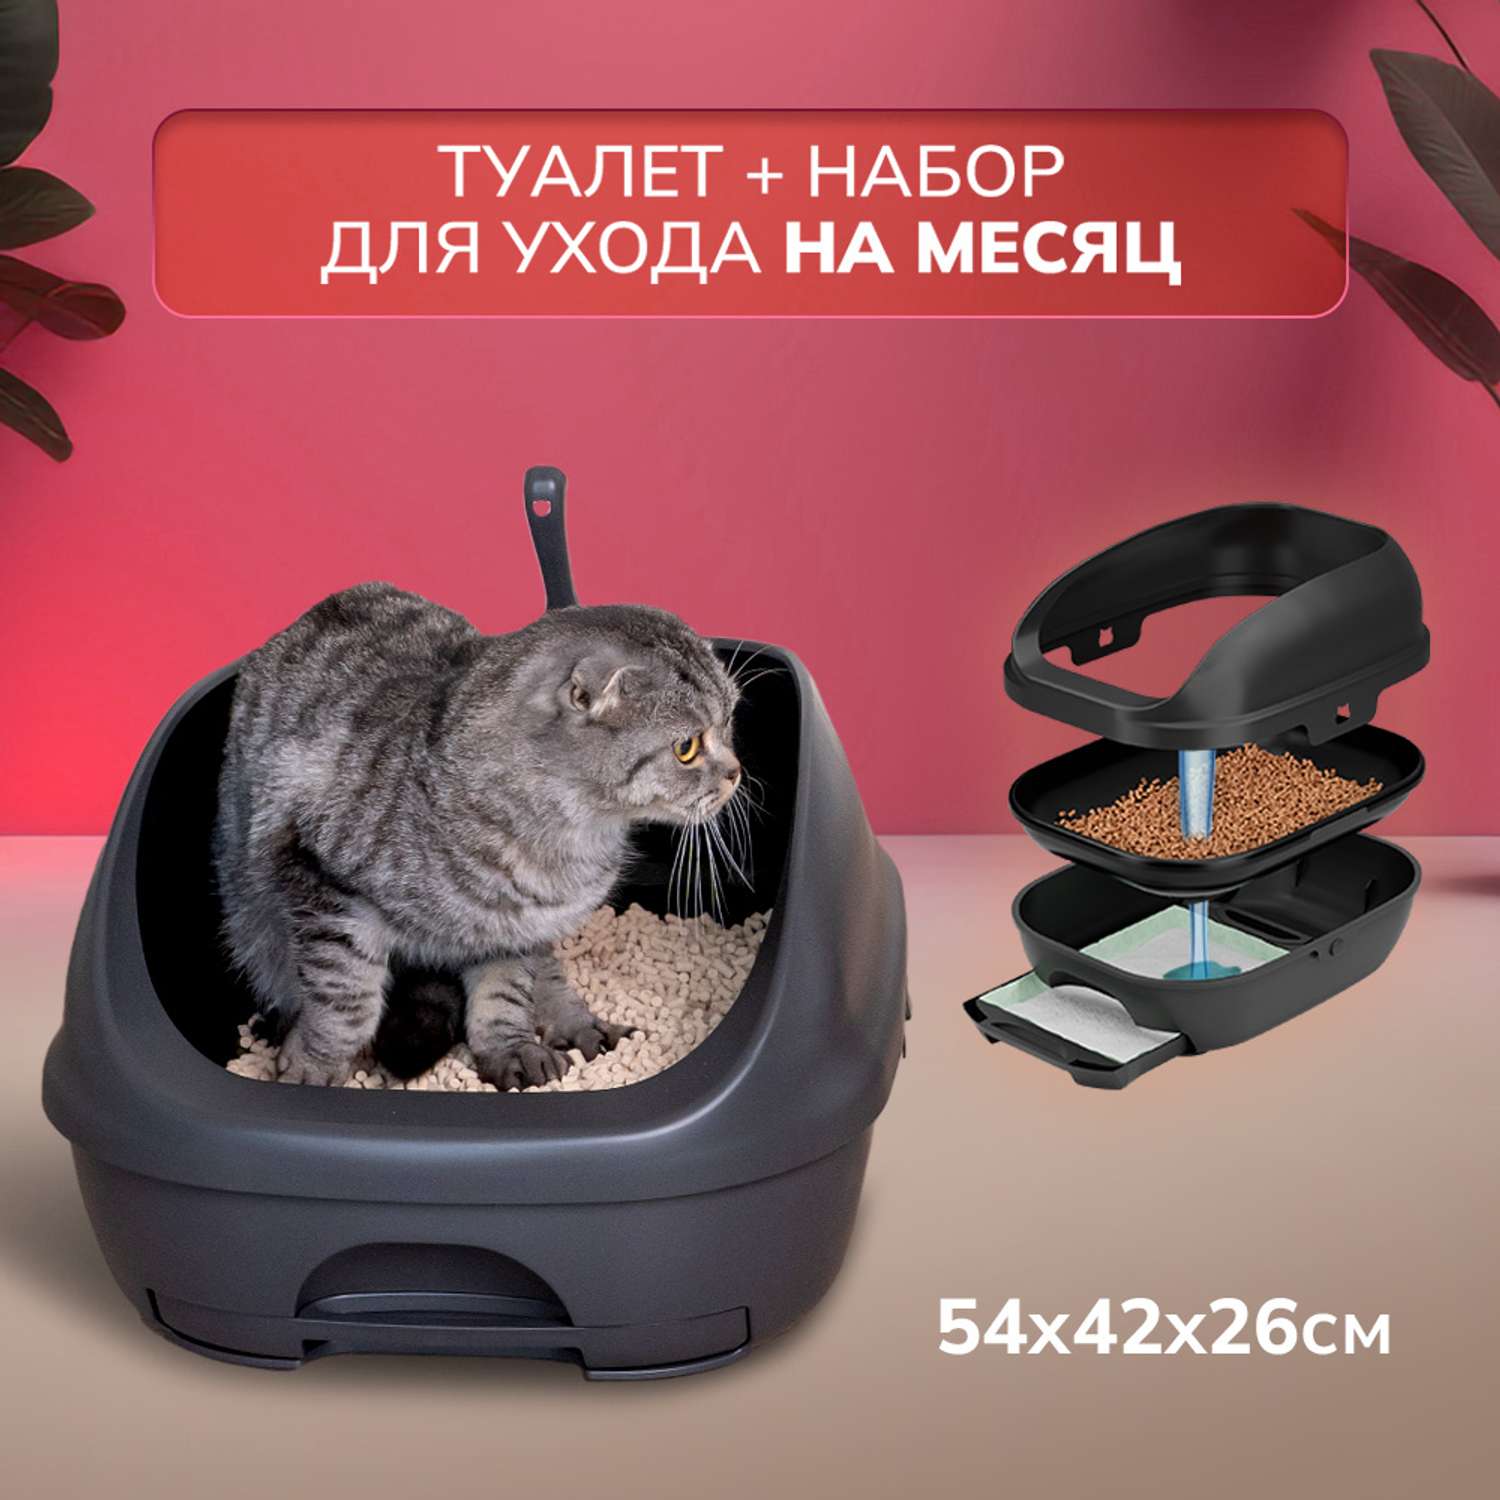 Системный туалет DeoToilet Unicharm для кошек открытого типа цвет темно серый набор - фото 1